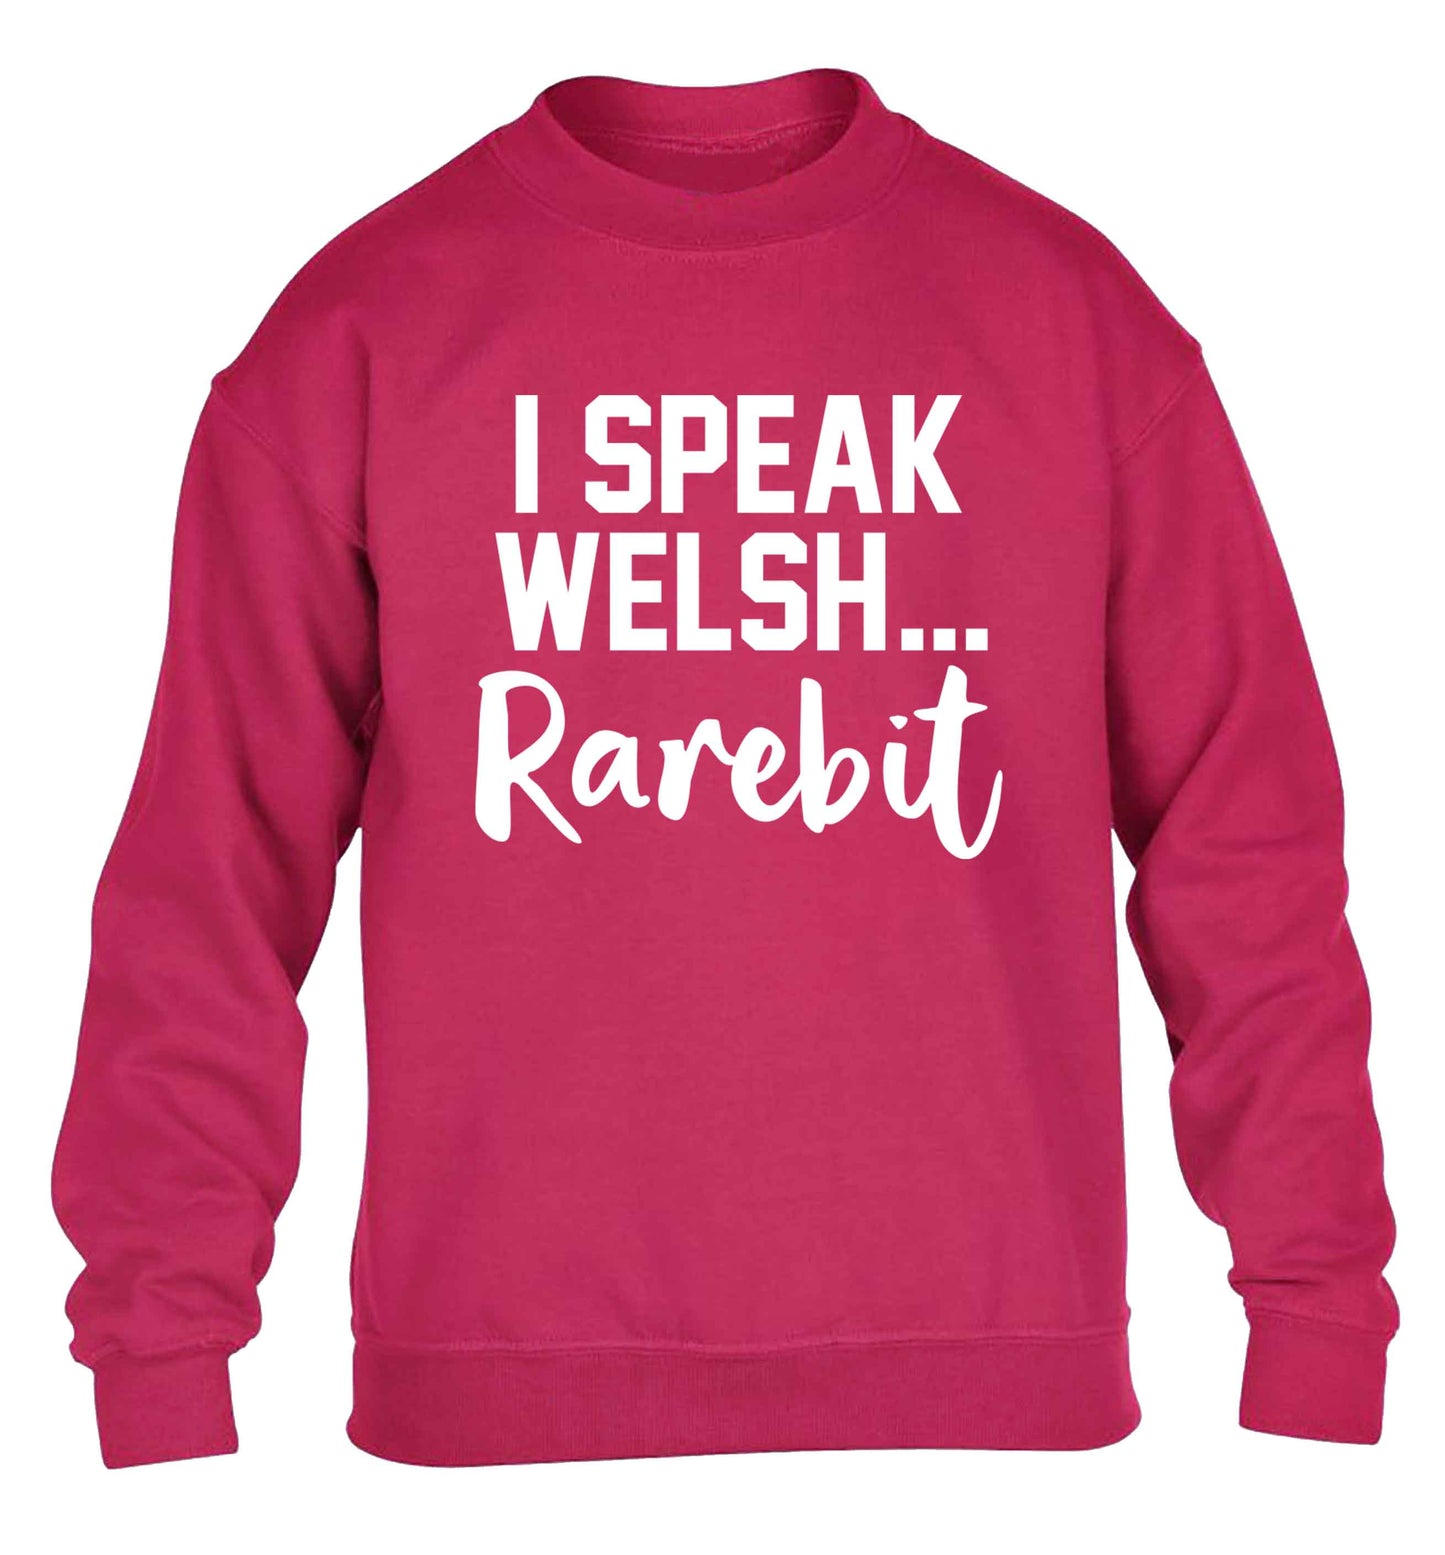 I speak Welsh...rarebit children's pink sweater 12-13 Years